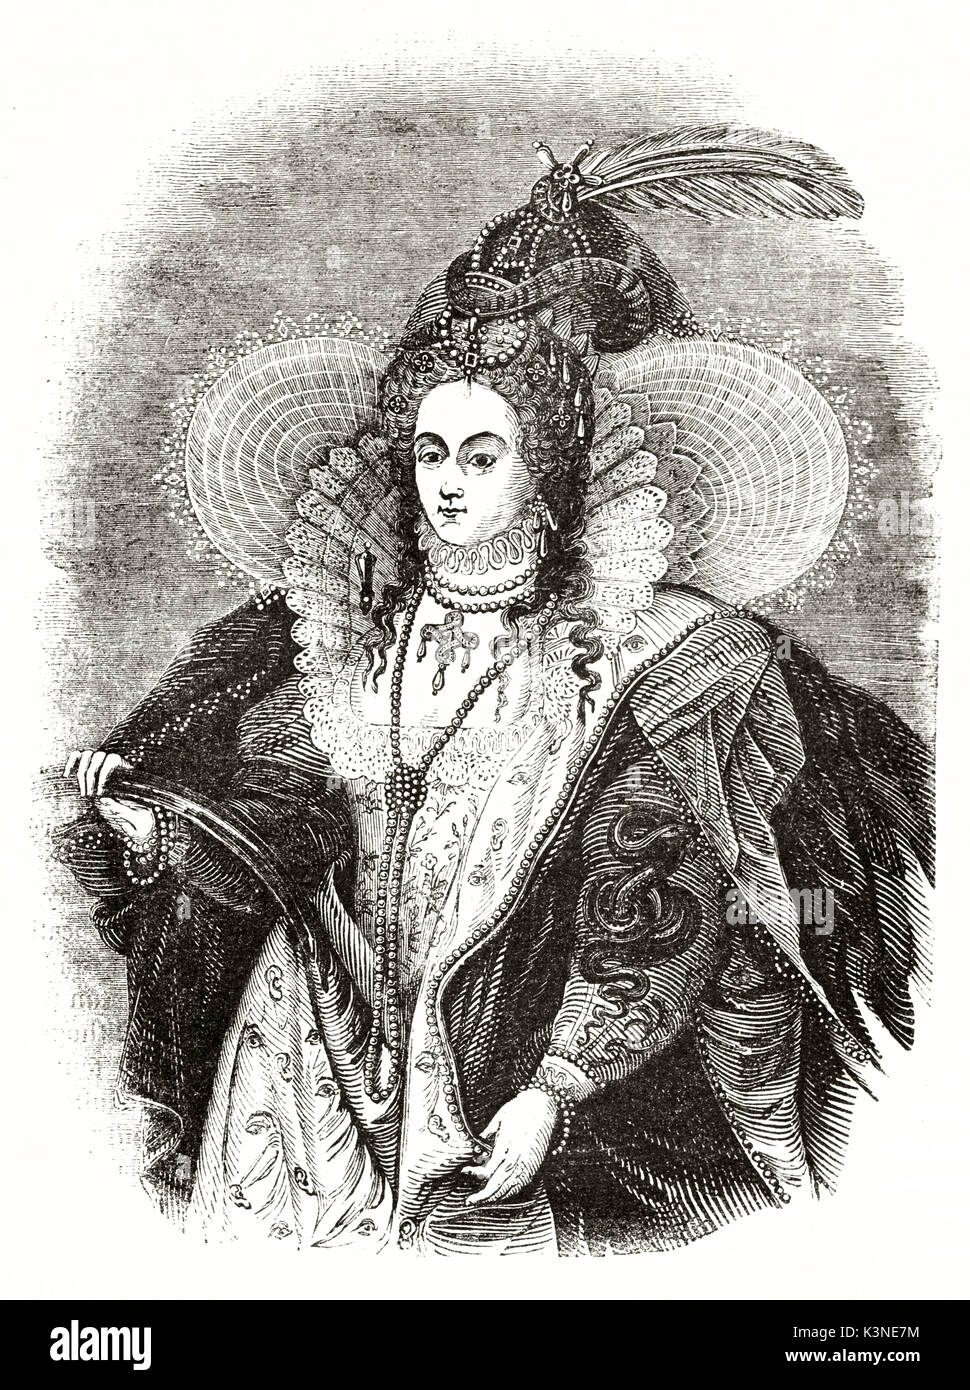 Alte graviert Reproduktion von Elisabeth I. von England portrait. Nach Zuccari auf Magasin Pittoresque Paris 1839 veröffentlicht. Stockfoto